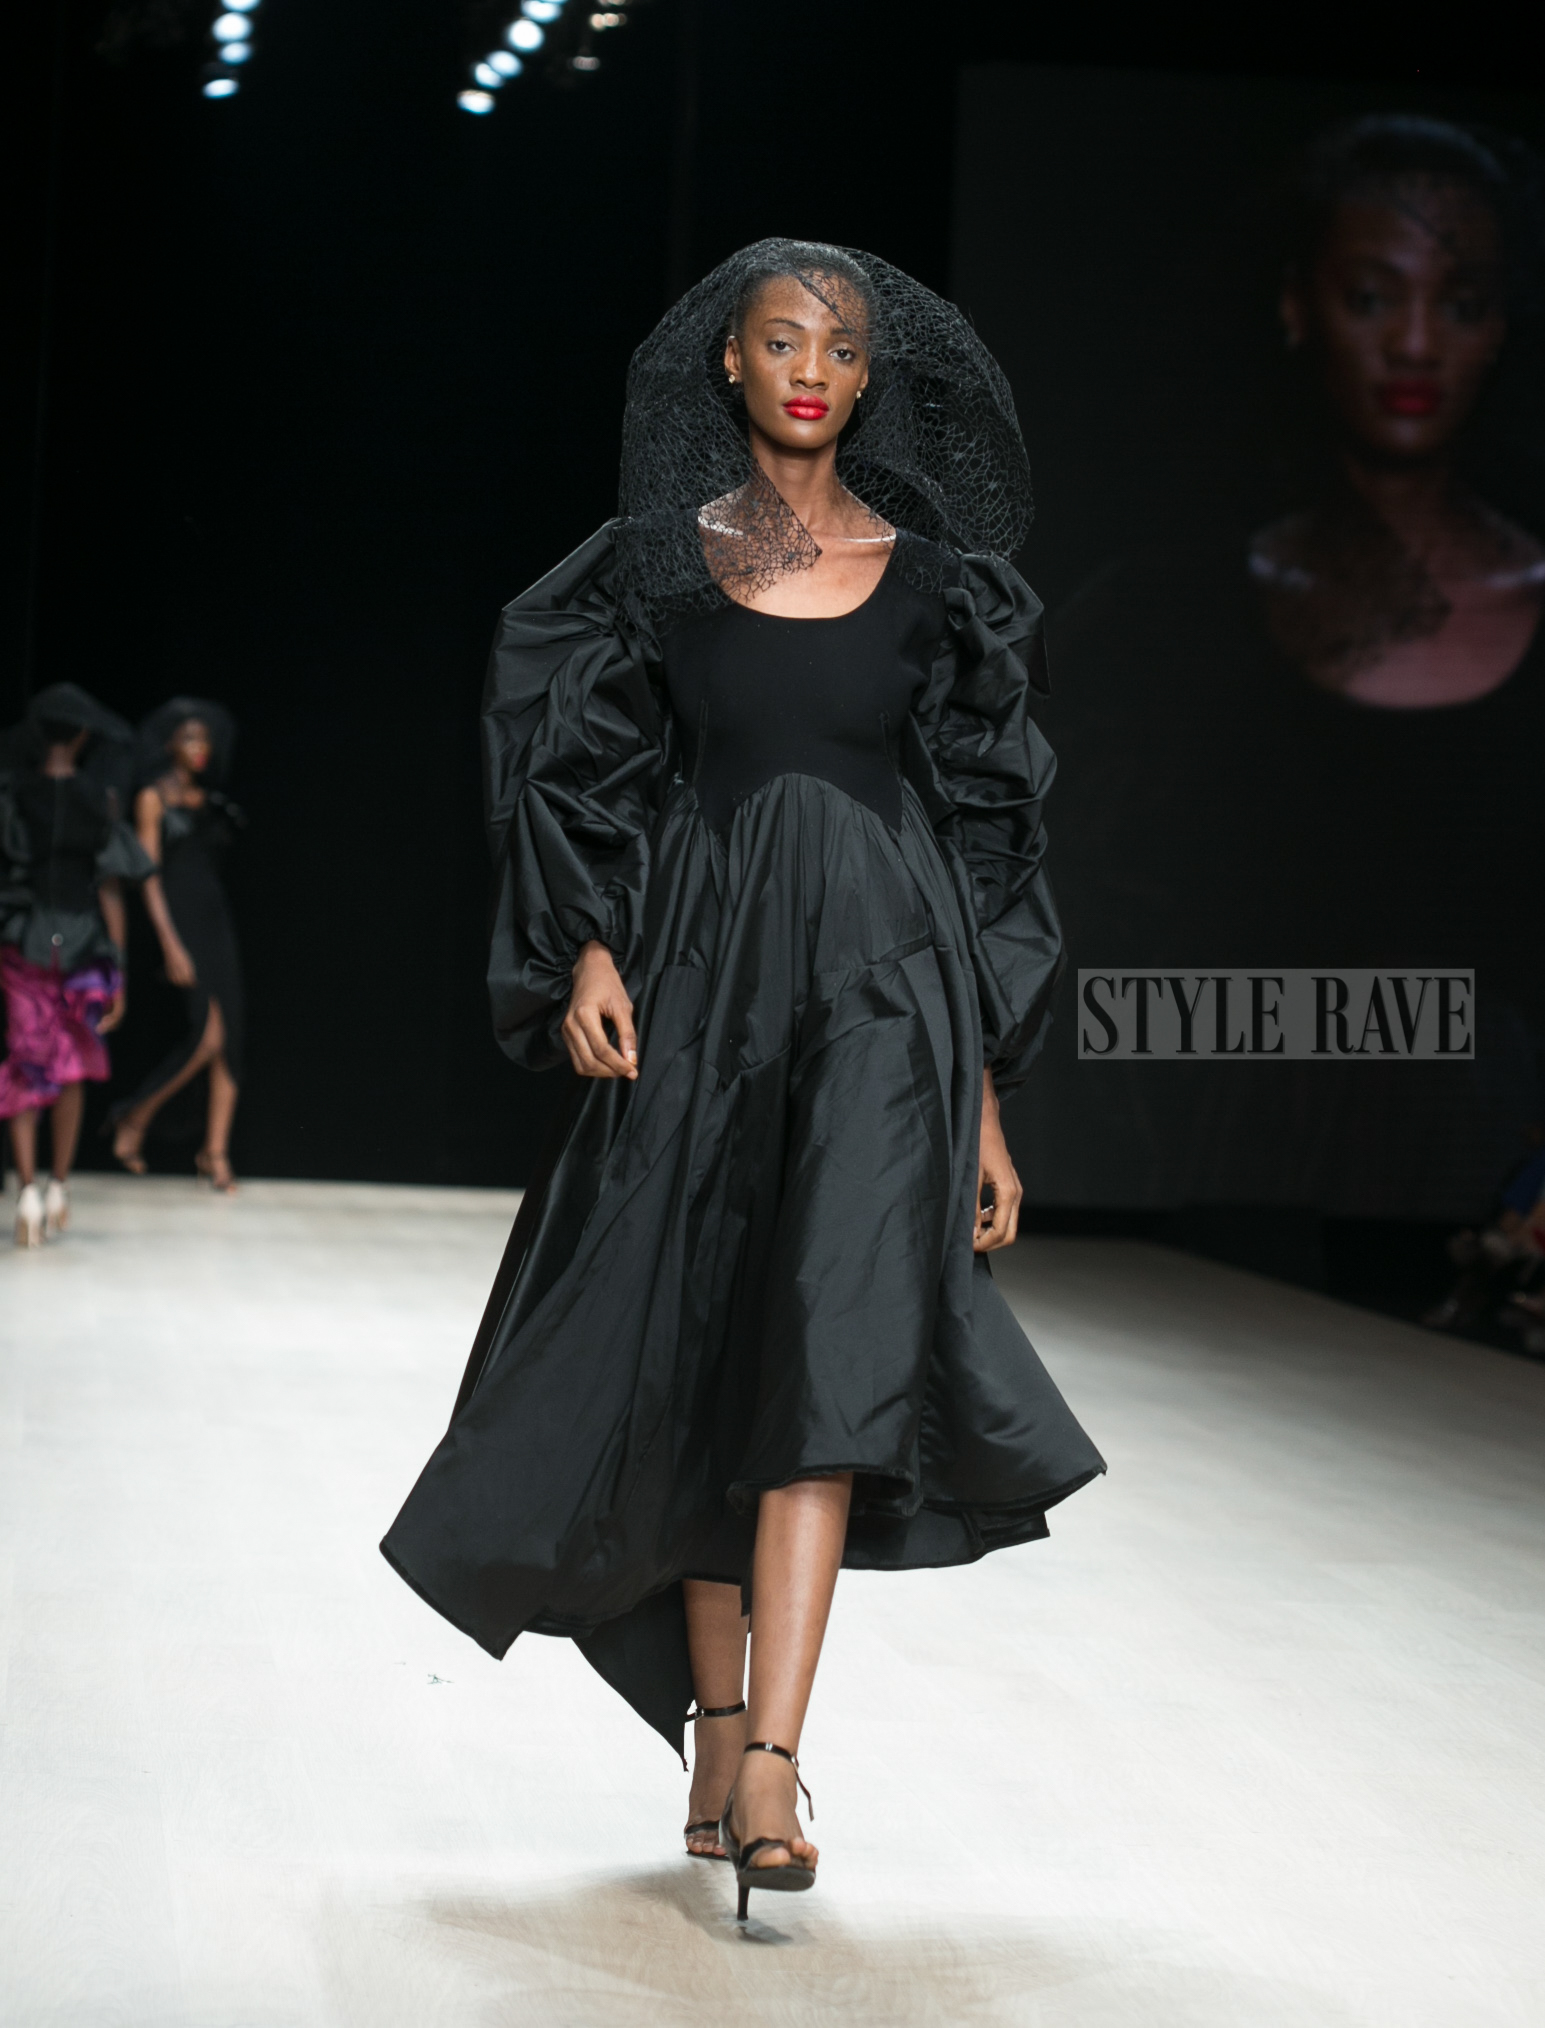 Arise Fashion Week: Lanre Da Silva Ajayi Brought Spring to Life